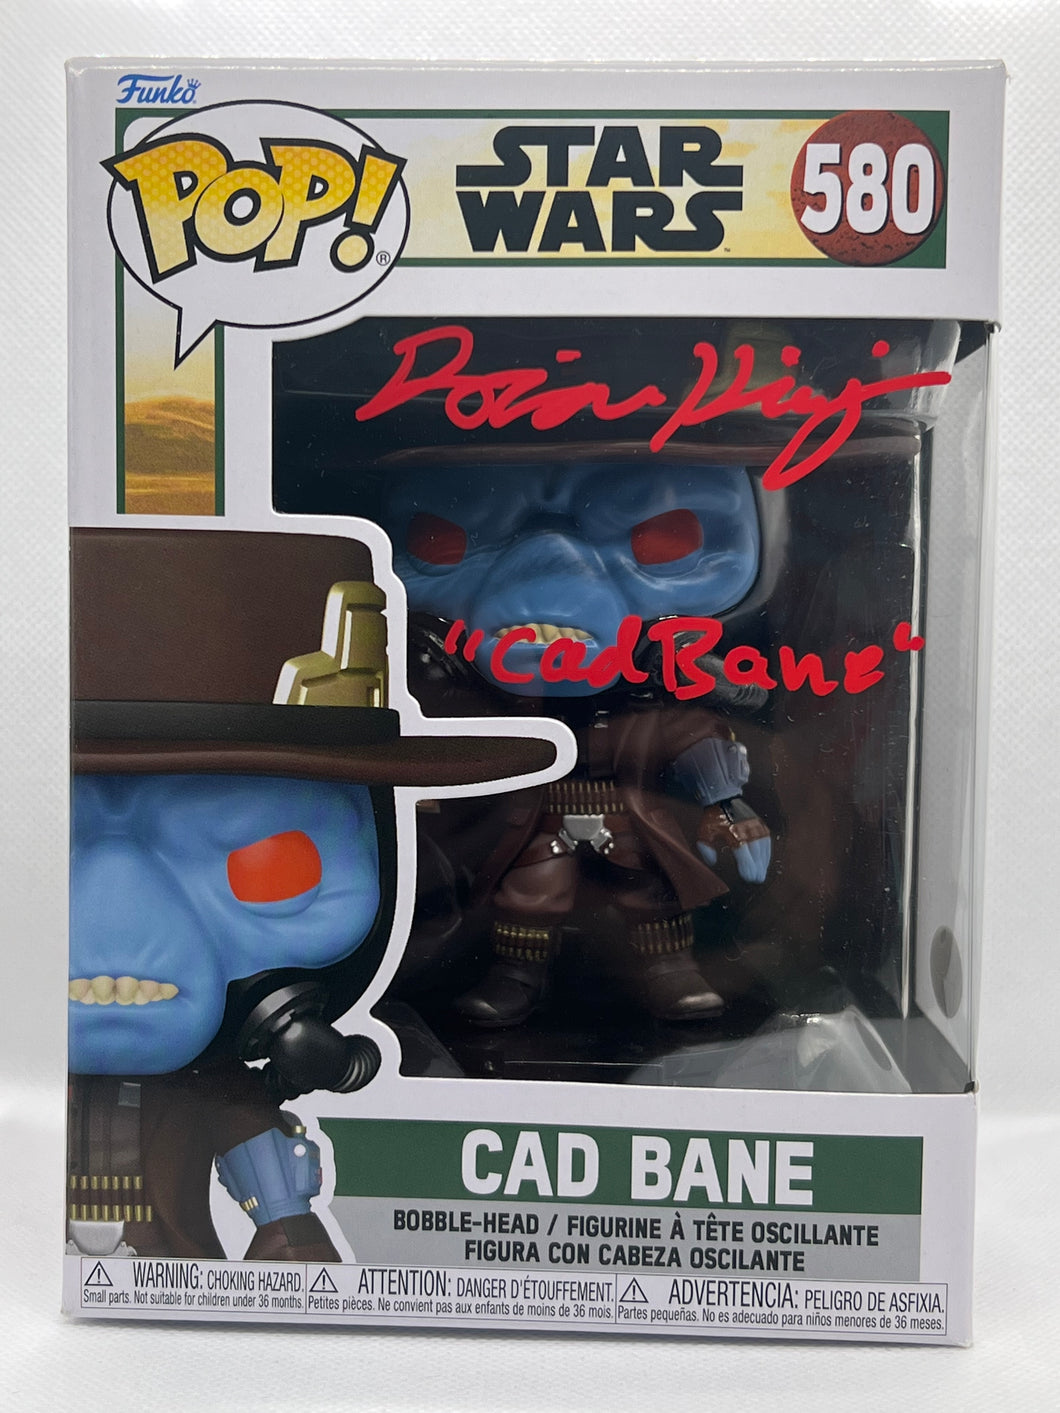 Cad Bane 580 Star Wars Funko Pop signed by Dorian Kingi with JSA CoA